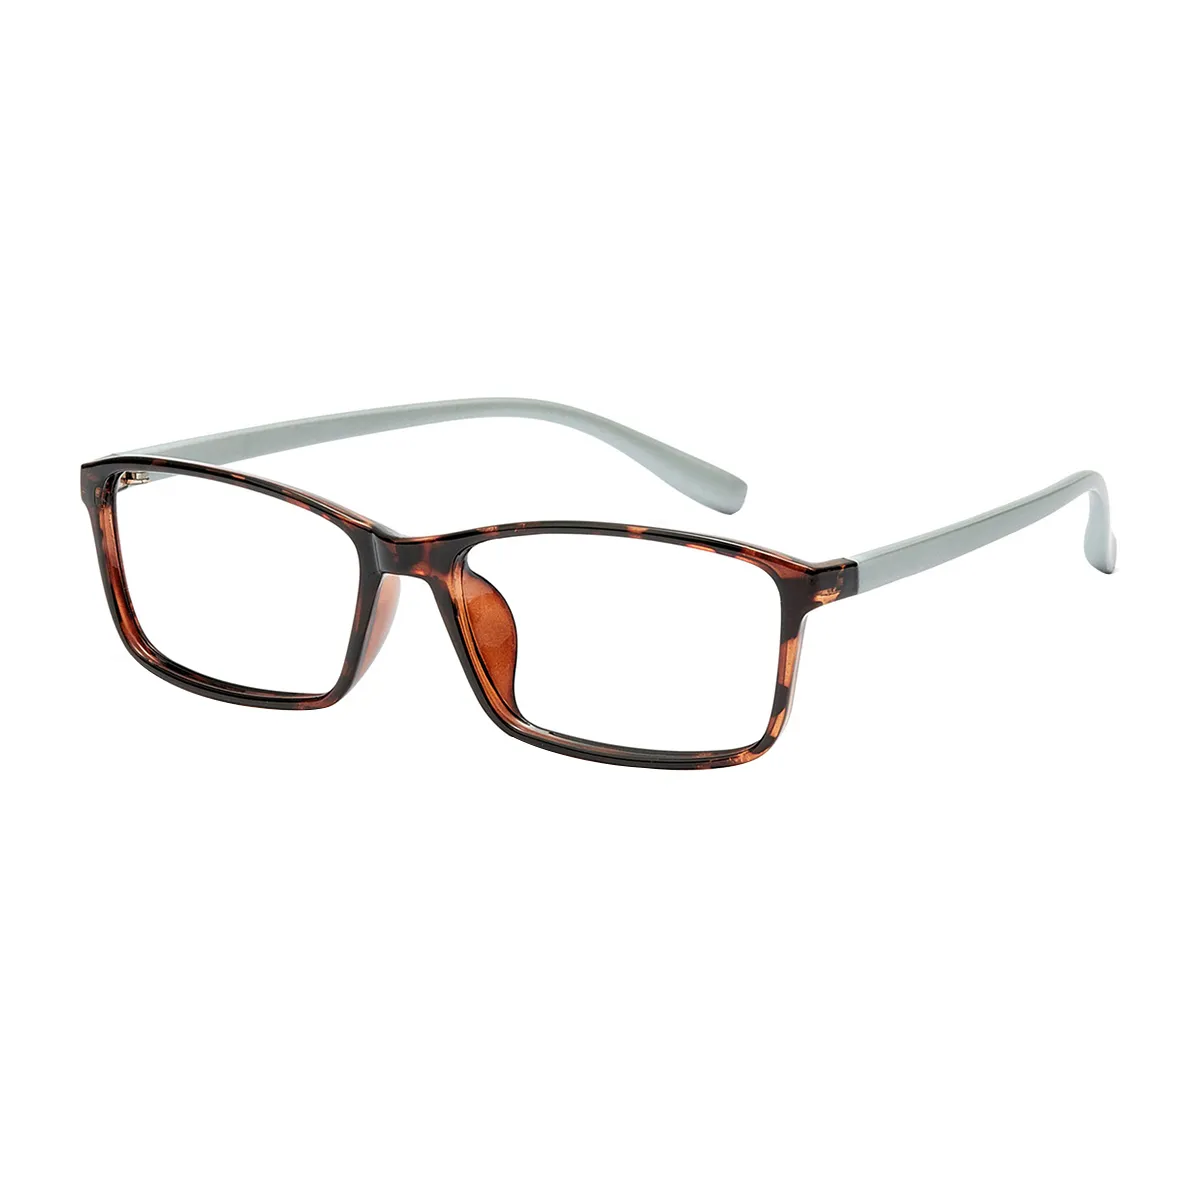 Dumas - Rectangle Tortoiseshell Glasses for Men & Women